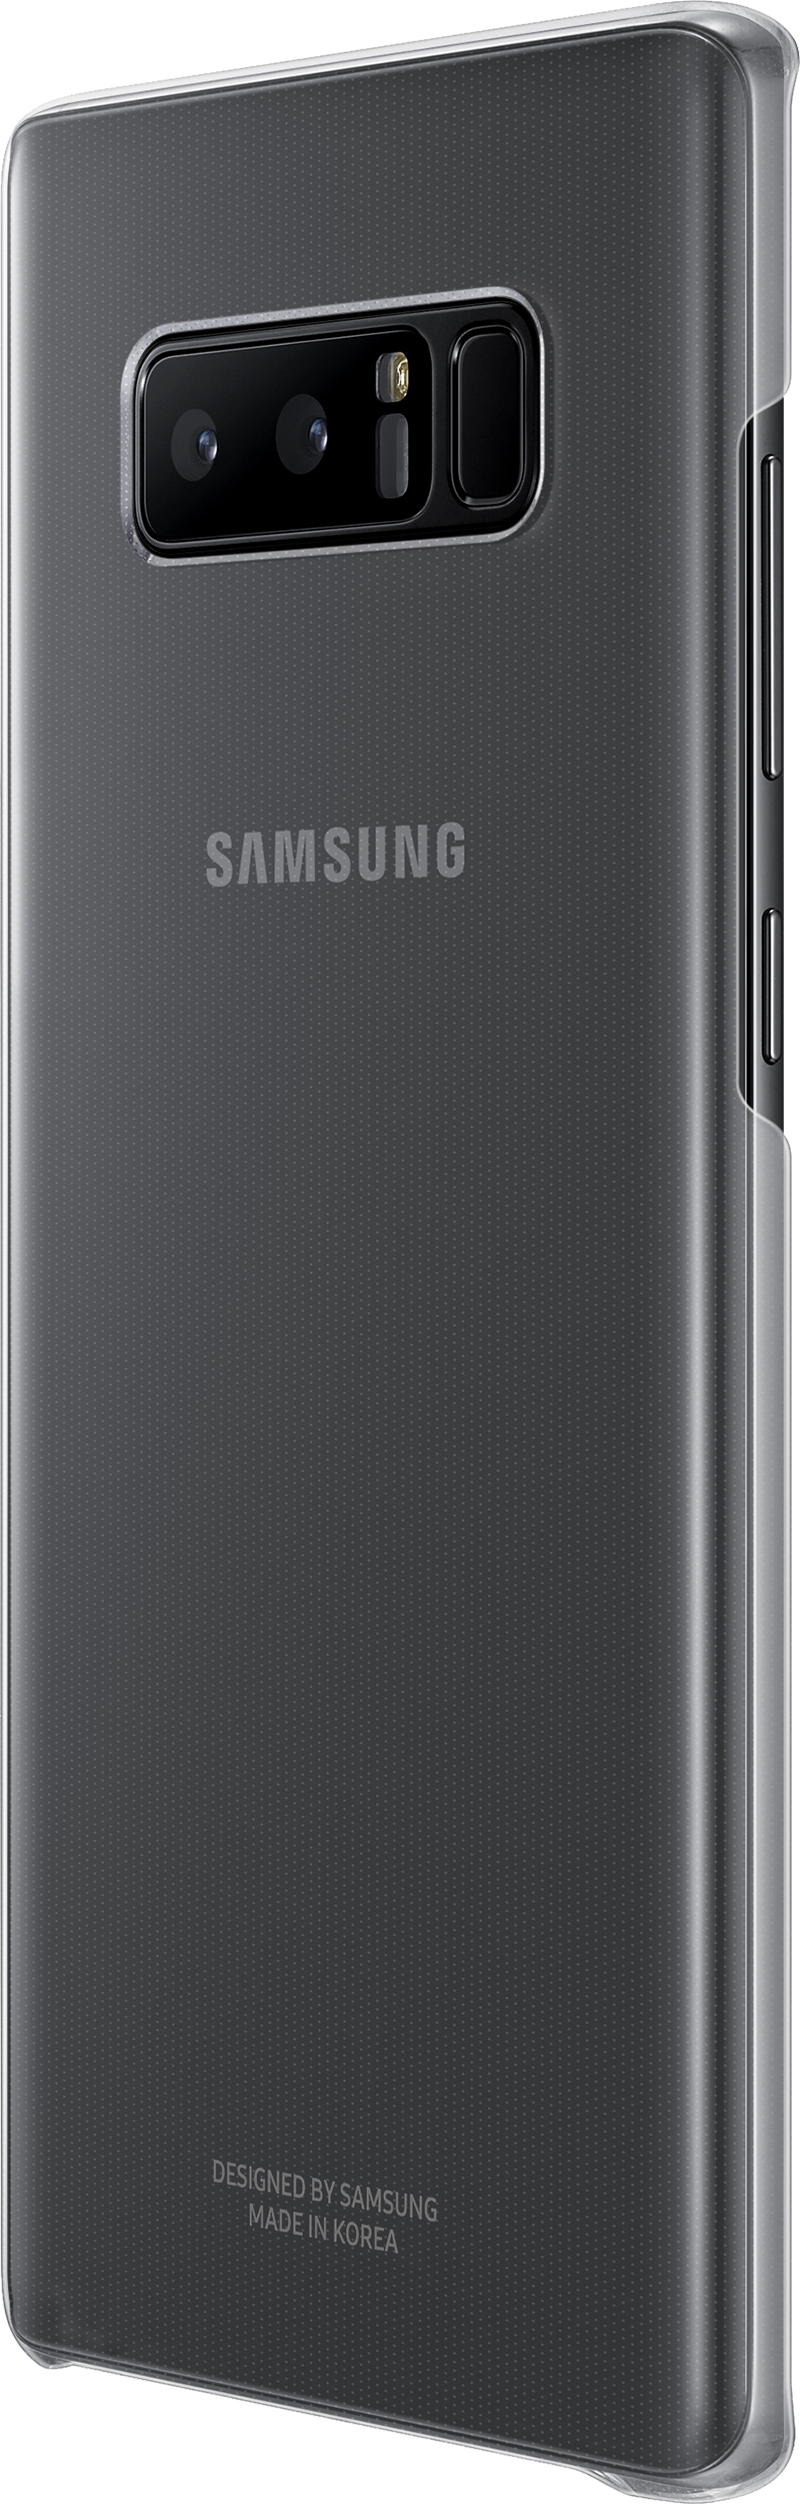 Coque transparente Galaxy Note 8